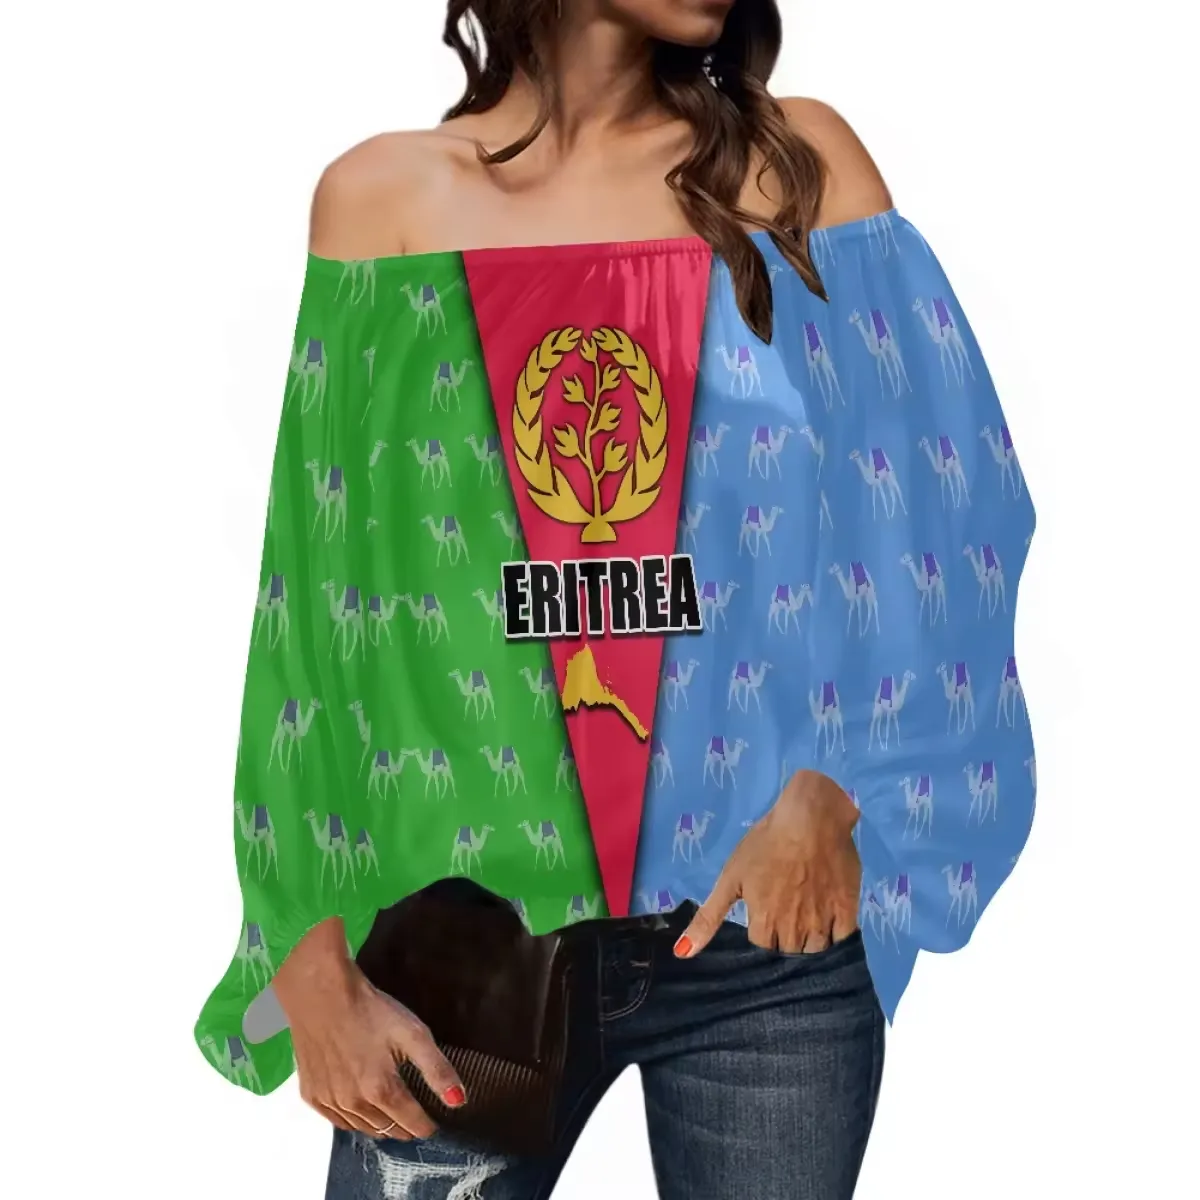 Blusas e camisas femininas elegantes por atacado Eritreia plus size com ombros de fora camisas femininas sexy blusa personalizada Eritreia